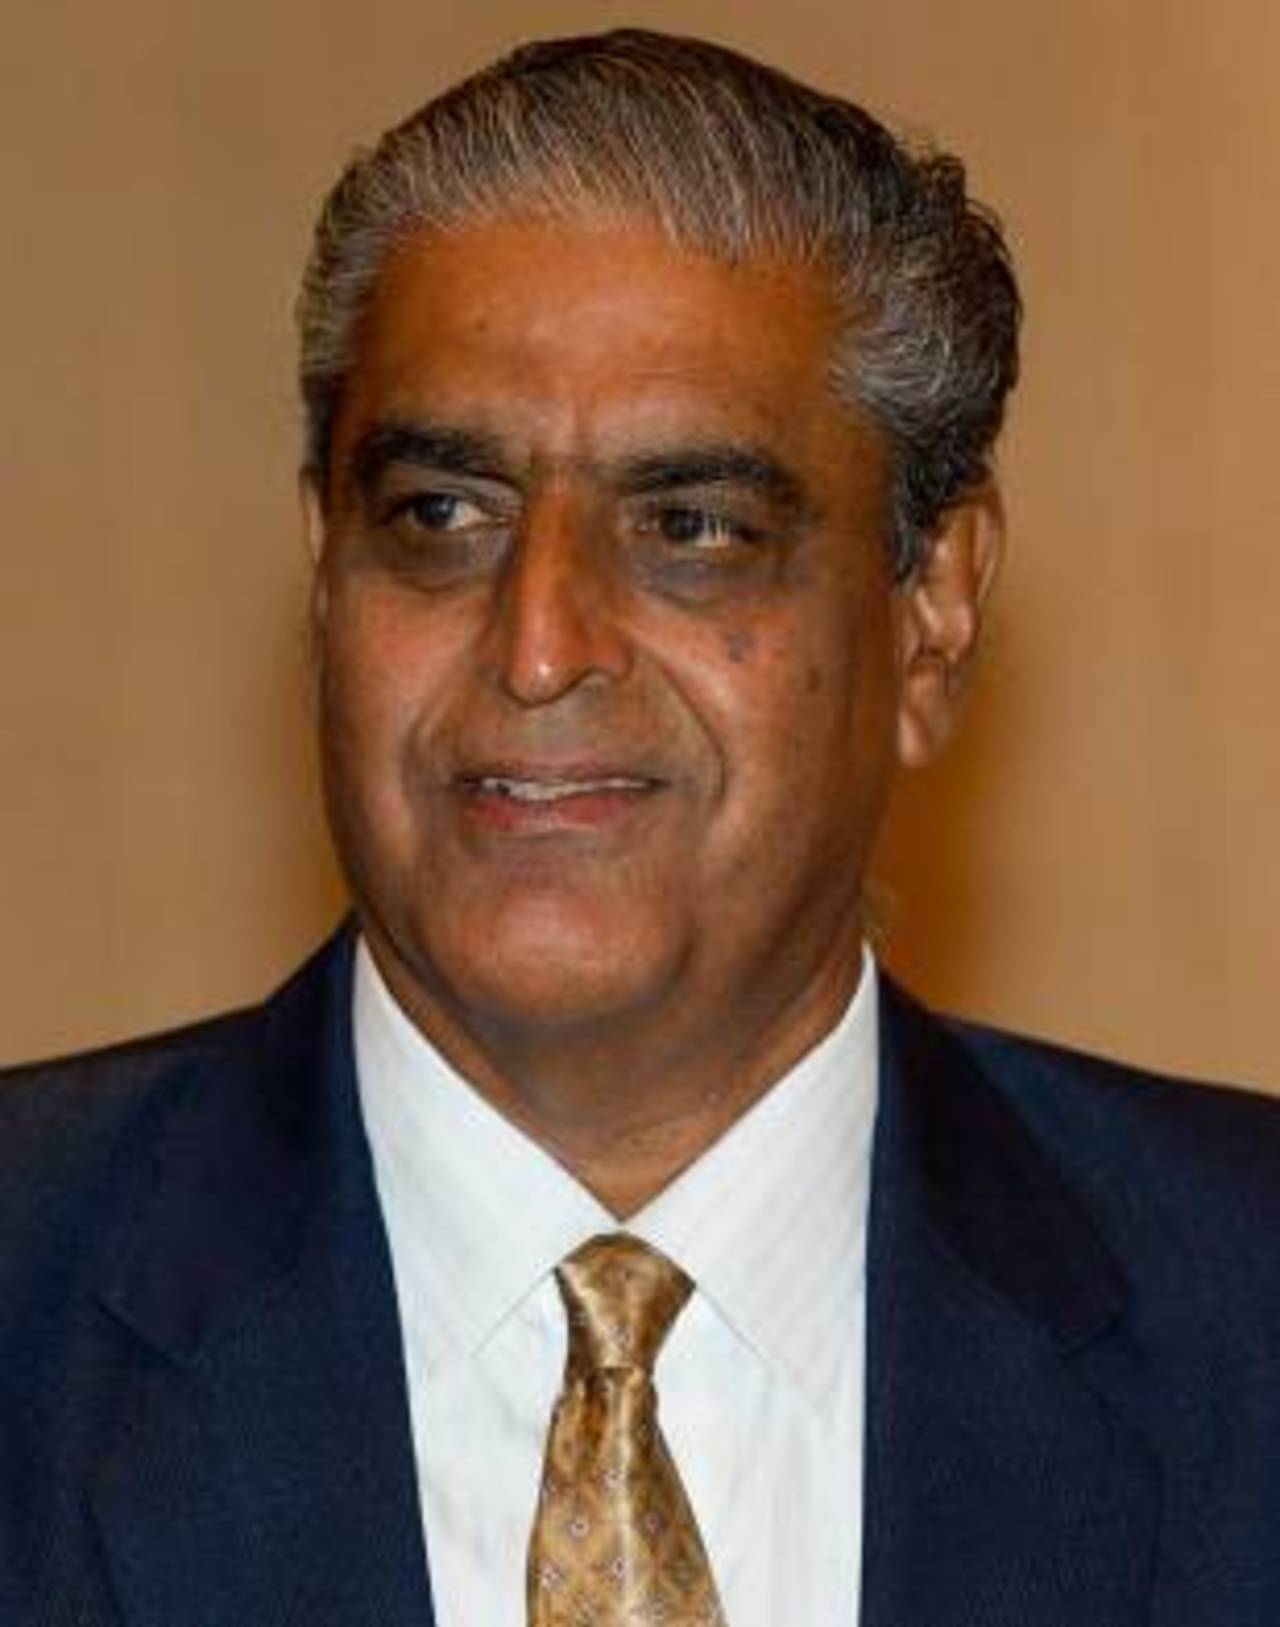 The BCCI secretary Sanjay Jagdale in Kuala Lumpur, Kuala Lumpur, June 24, 2012